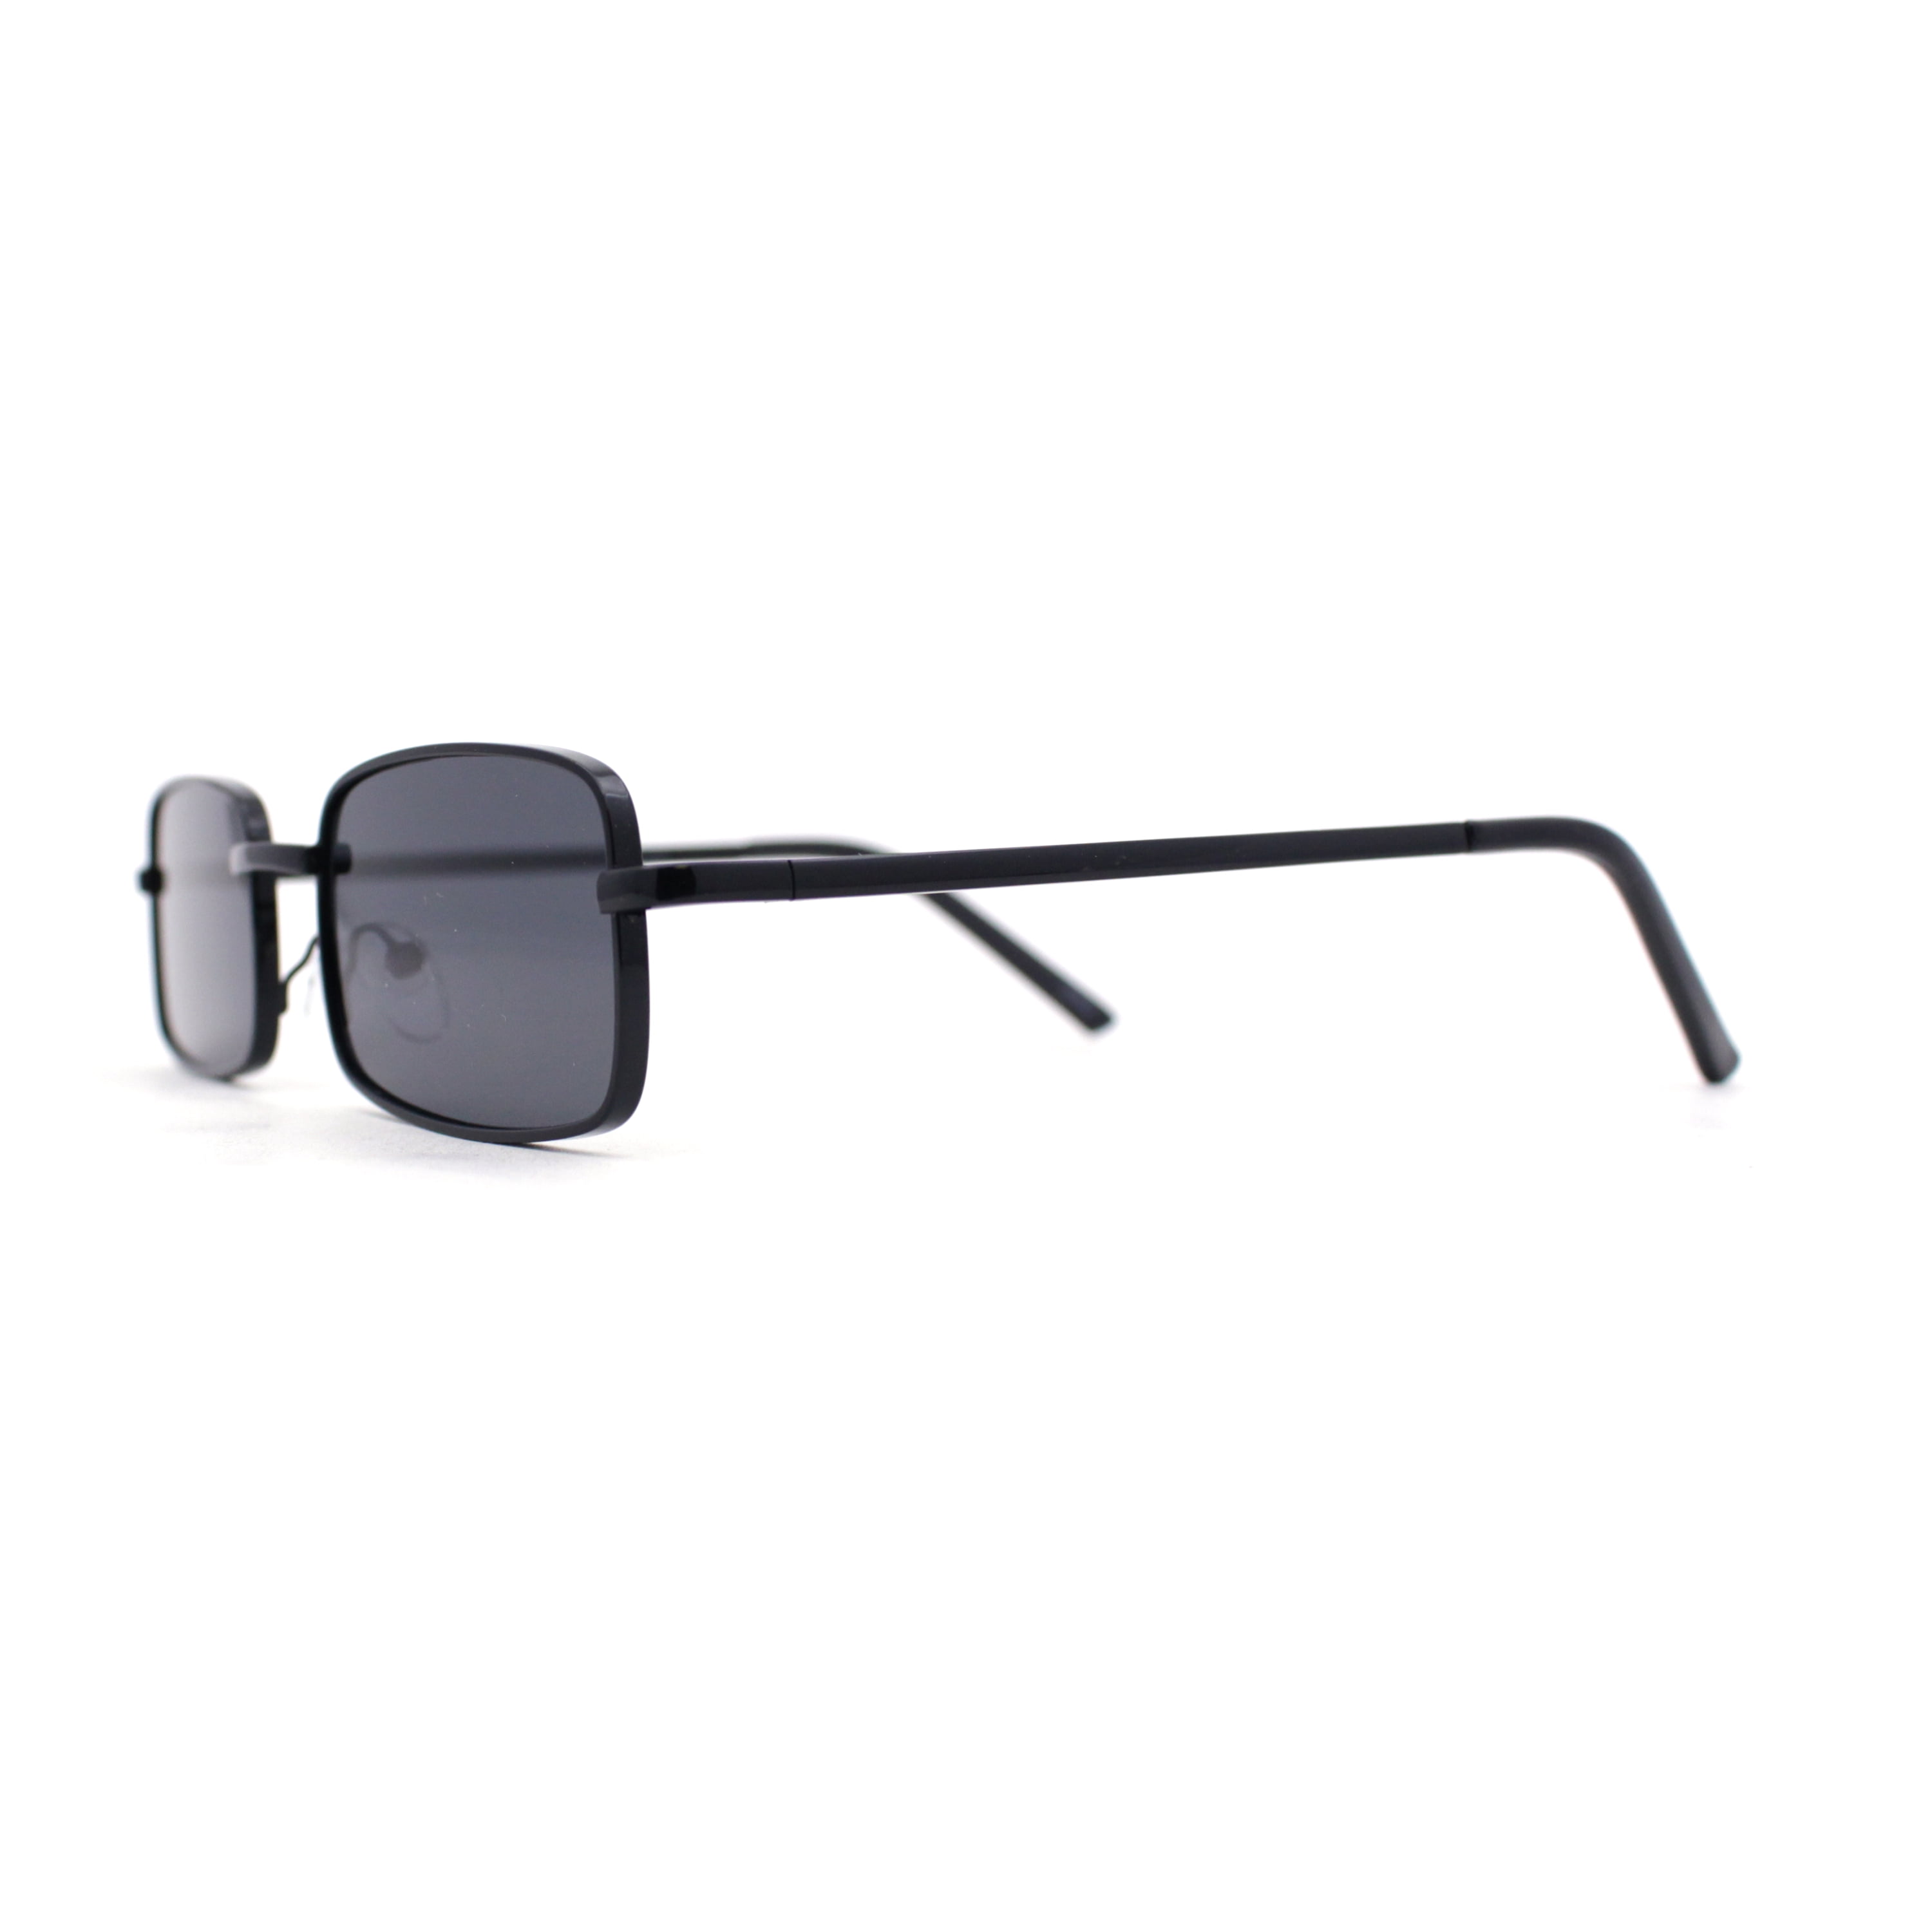 Mens Classic Sunglasses Narrow All Black Dad Metal Rim Rectangle